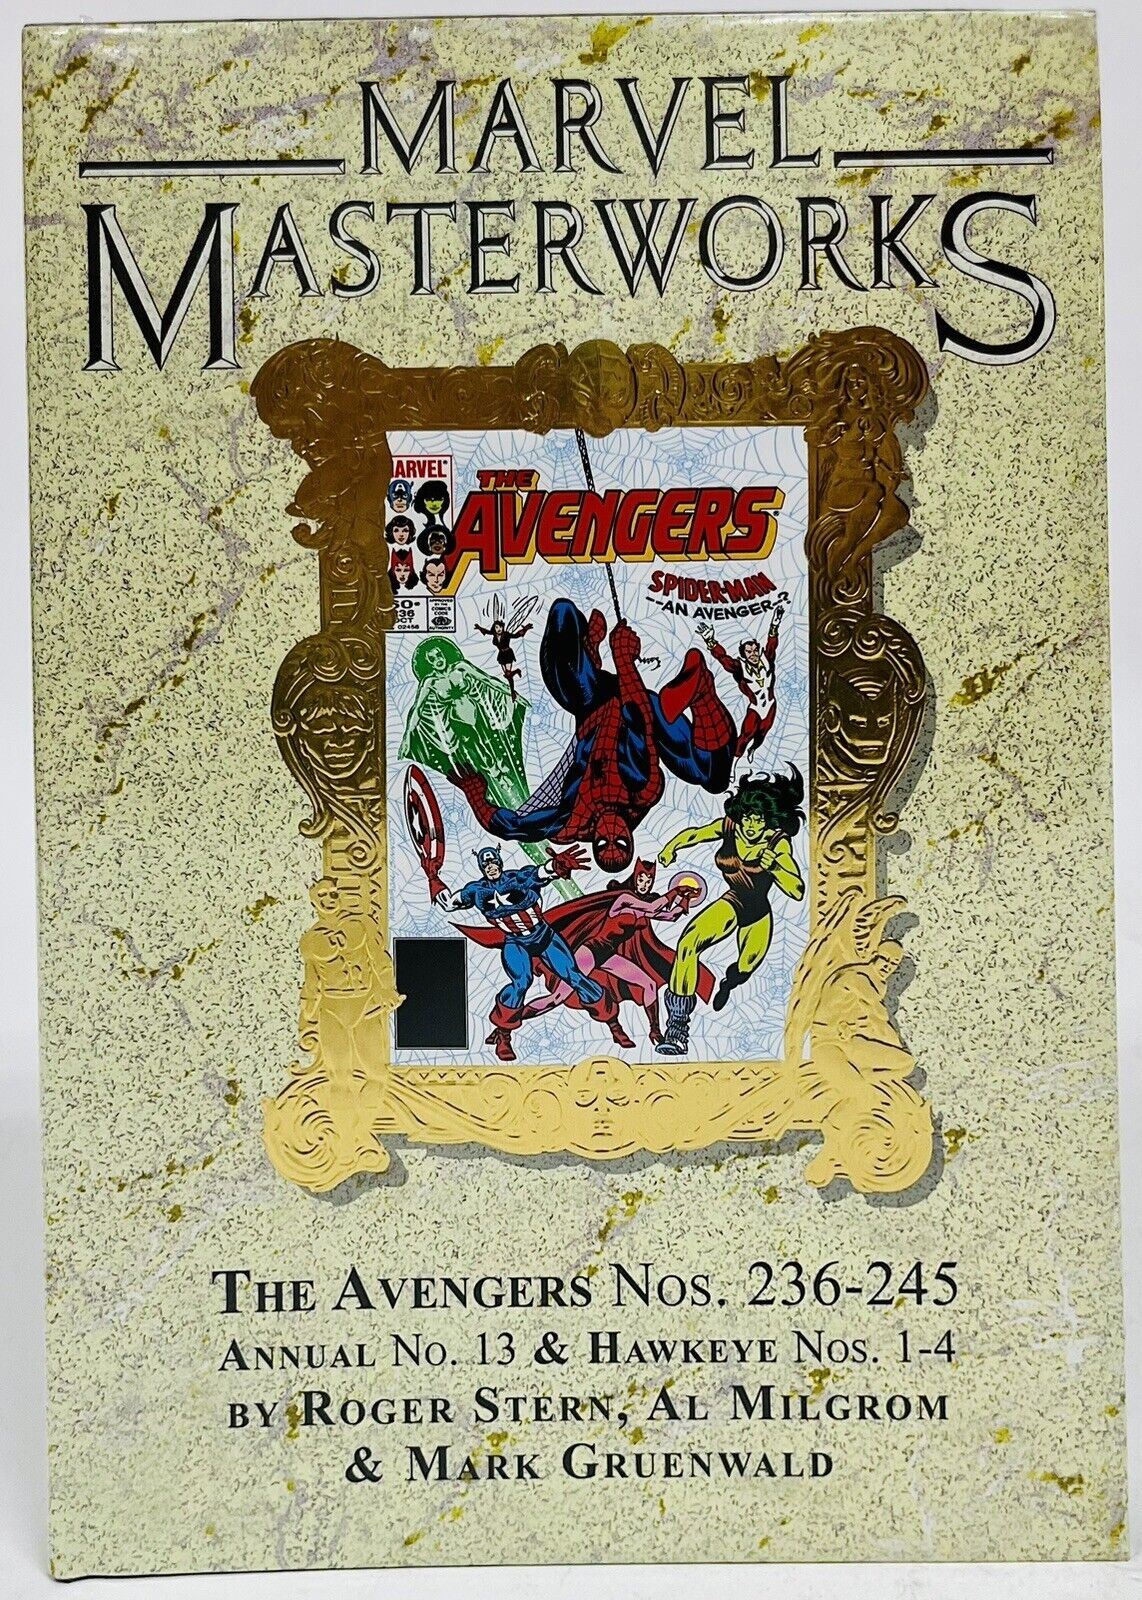 Marvel Masterworks 342 DM Cover The Avengers #23 New Marvel Comics HC Hardcover